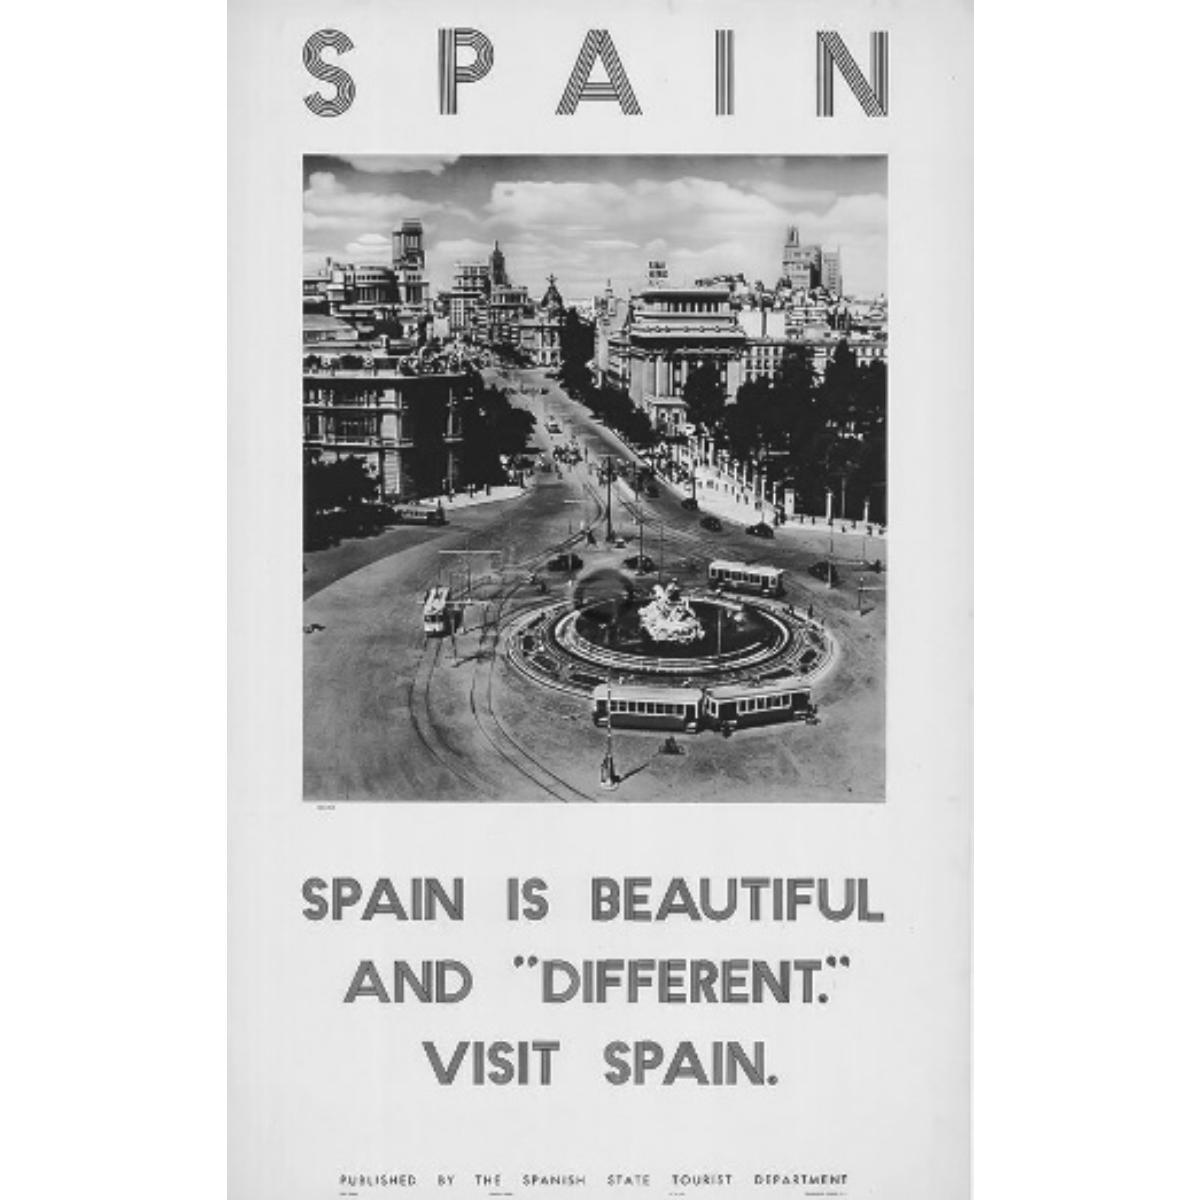 Campaña de promoción turística de la marca España.